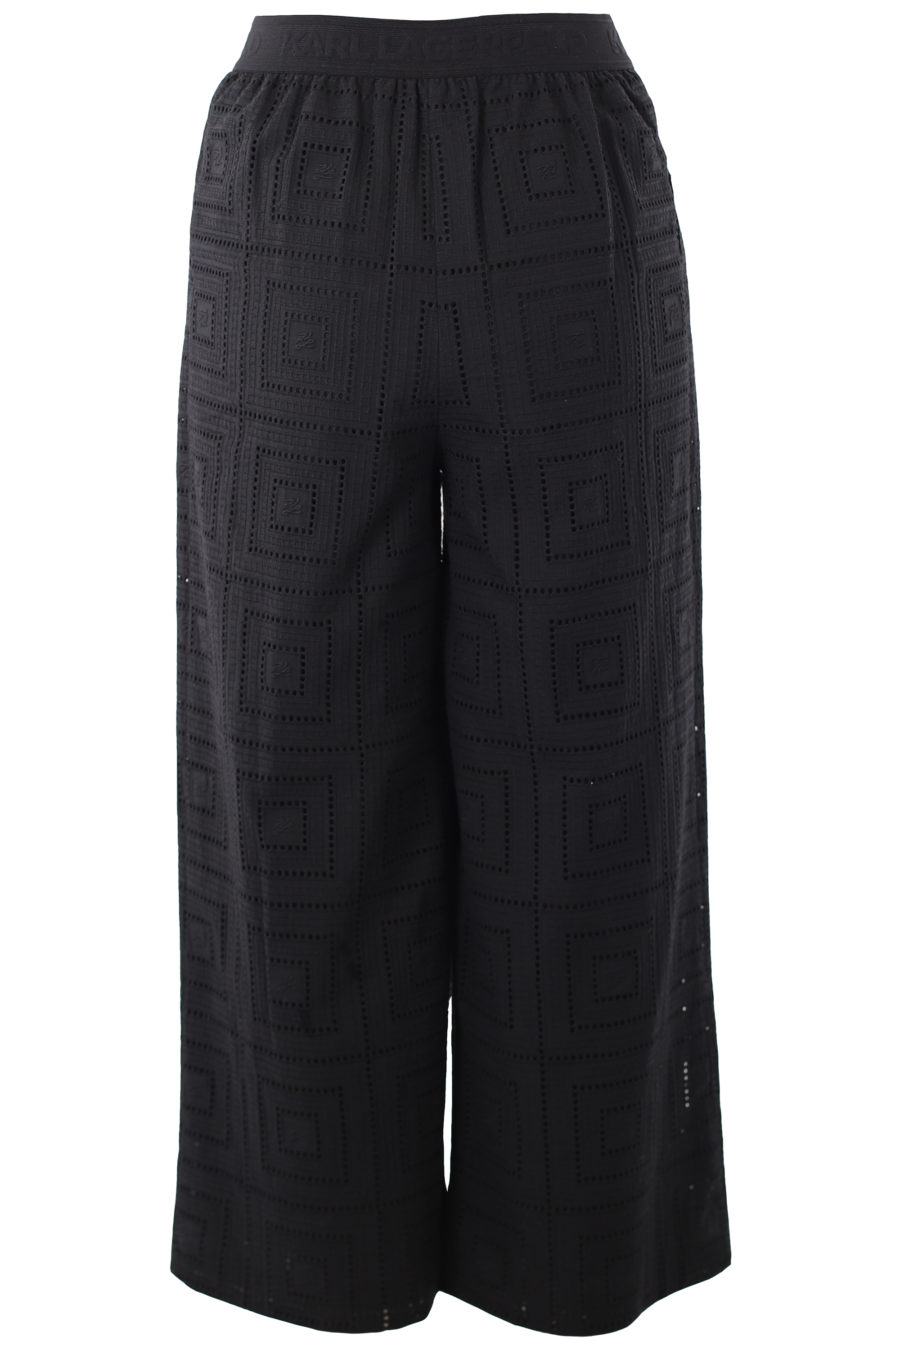 Pantalón negro bordado - IMG 1346